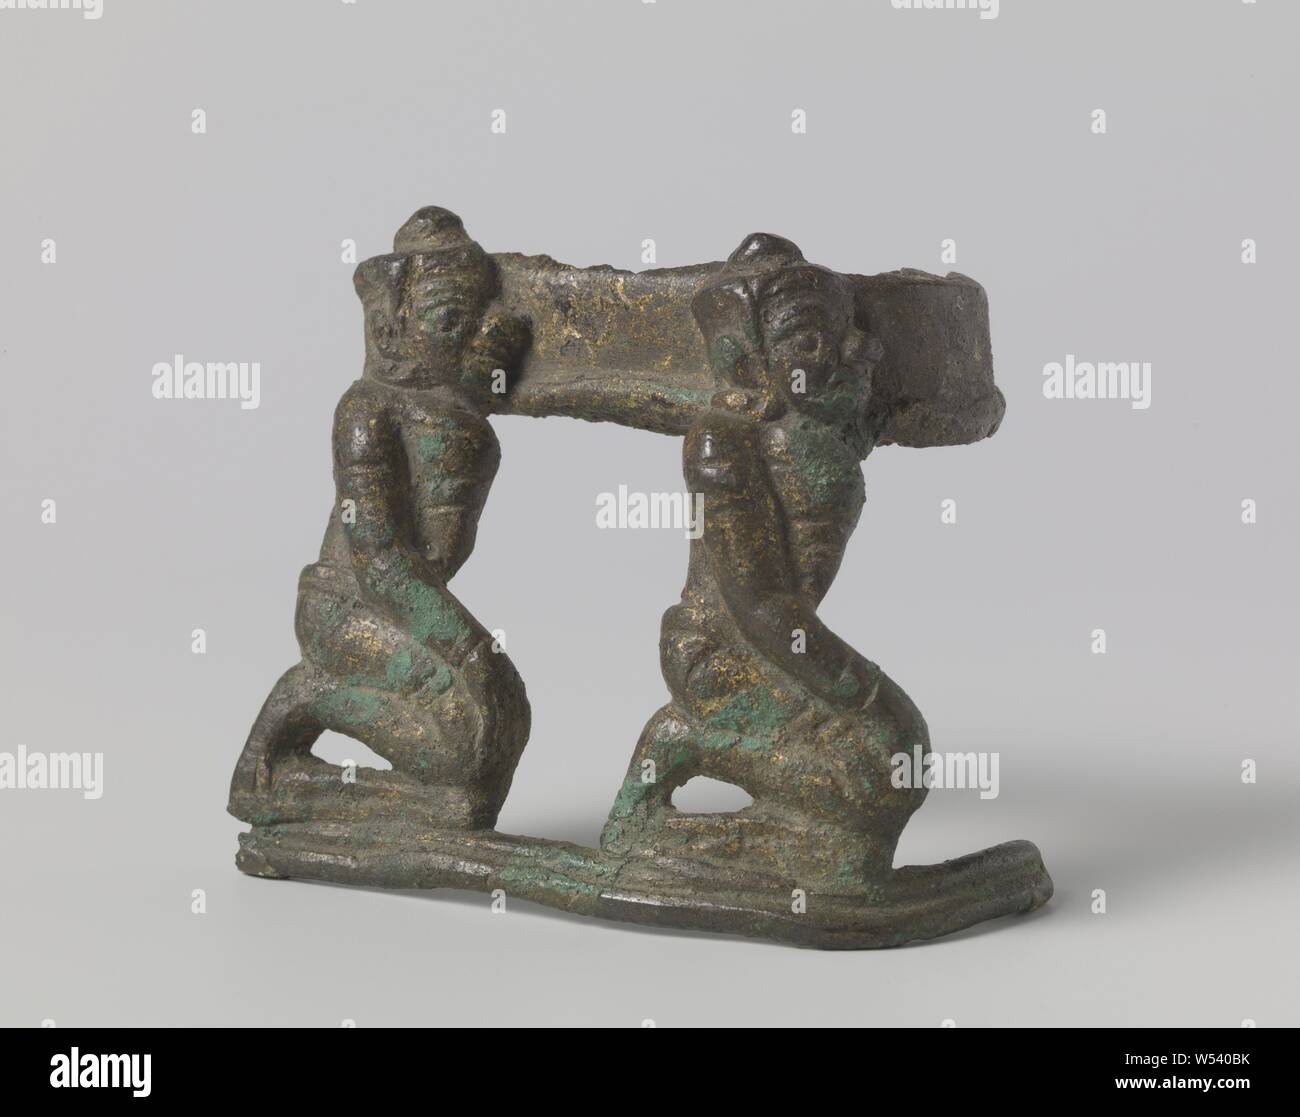 Frammento di una scultura, un frammento di una scultura con la rappresentazione di due asuras (demoni) seduto sulle ginocchia e trasportare qualcosa di pesante sulle loro spalle., anonimo, Cambodja, c. 1200 - c. 1300, bronzo (metallo), h 7,9 cm × W 8.9 cm × d 4.6 cm × h 9,3 cm × W 9.5 cm × d 5.3 cm Foto Stock